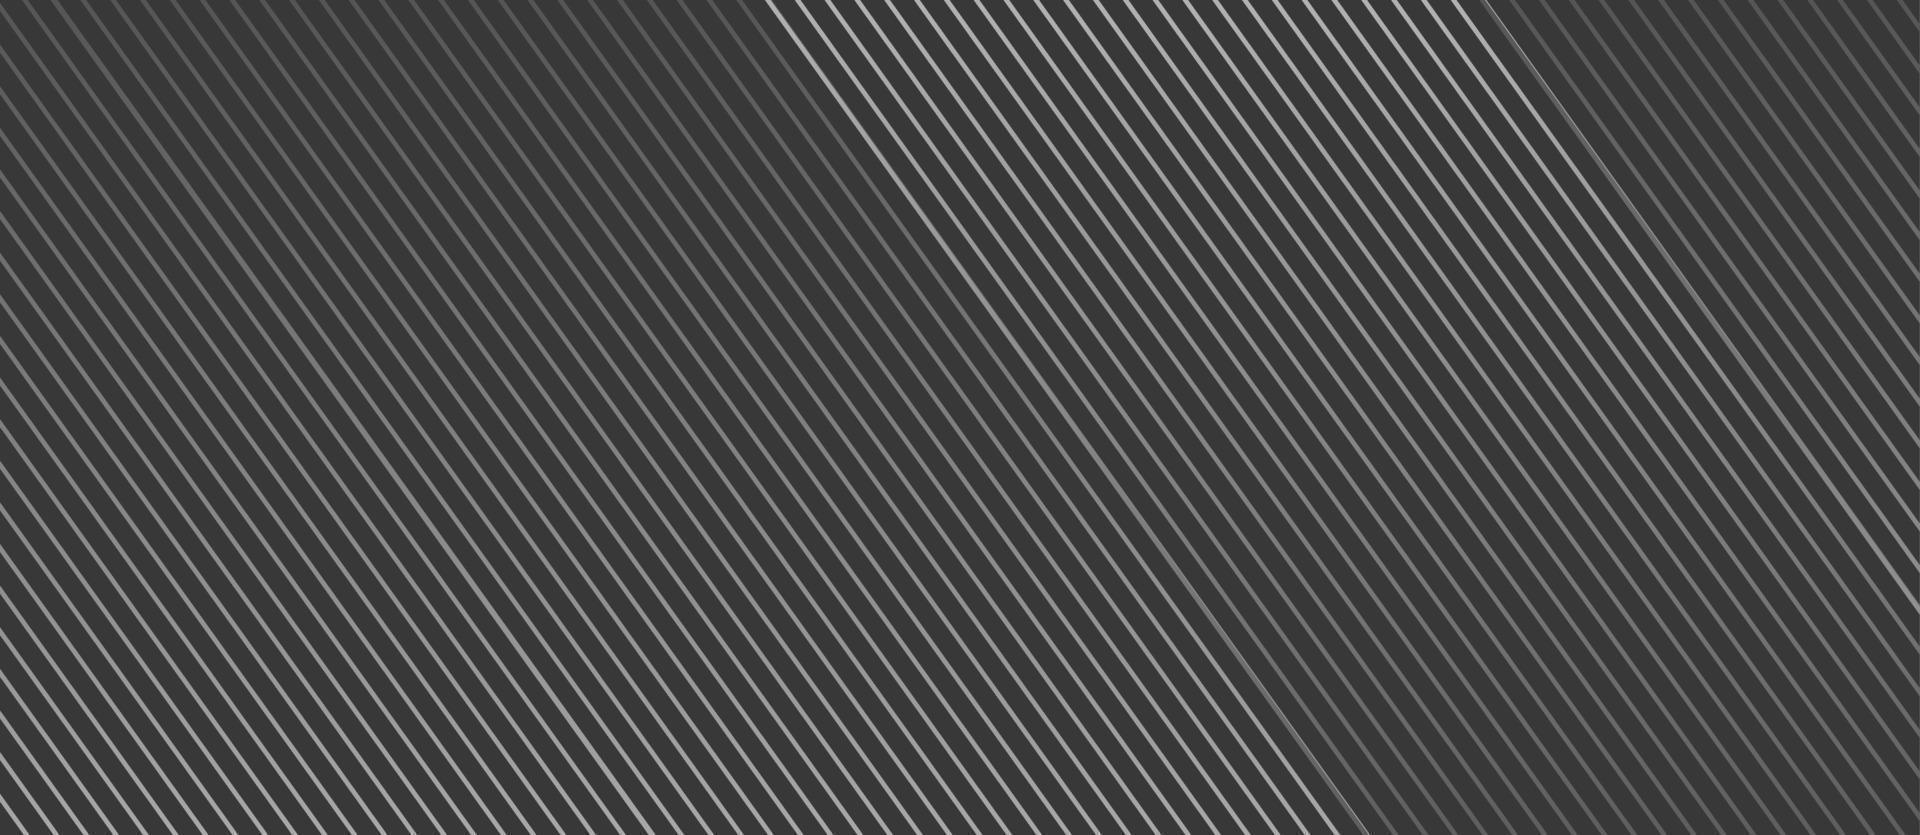 linha topográfica redonda linhas abstratas. padrão de linhas cinzas sobre fundo branco. linhas onduladas e espaço de cópia vetor